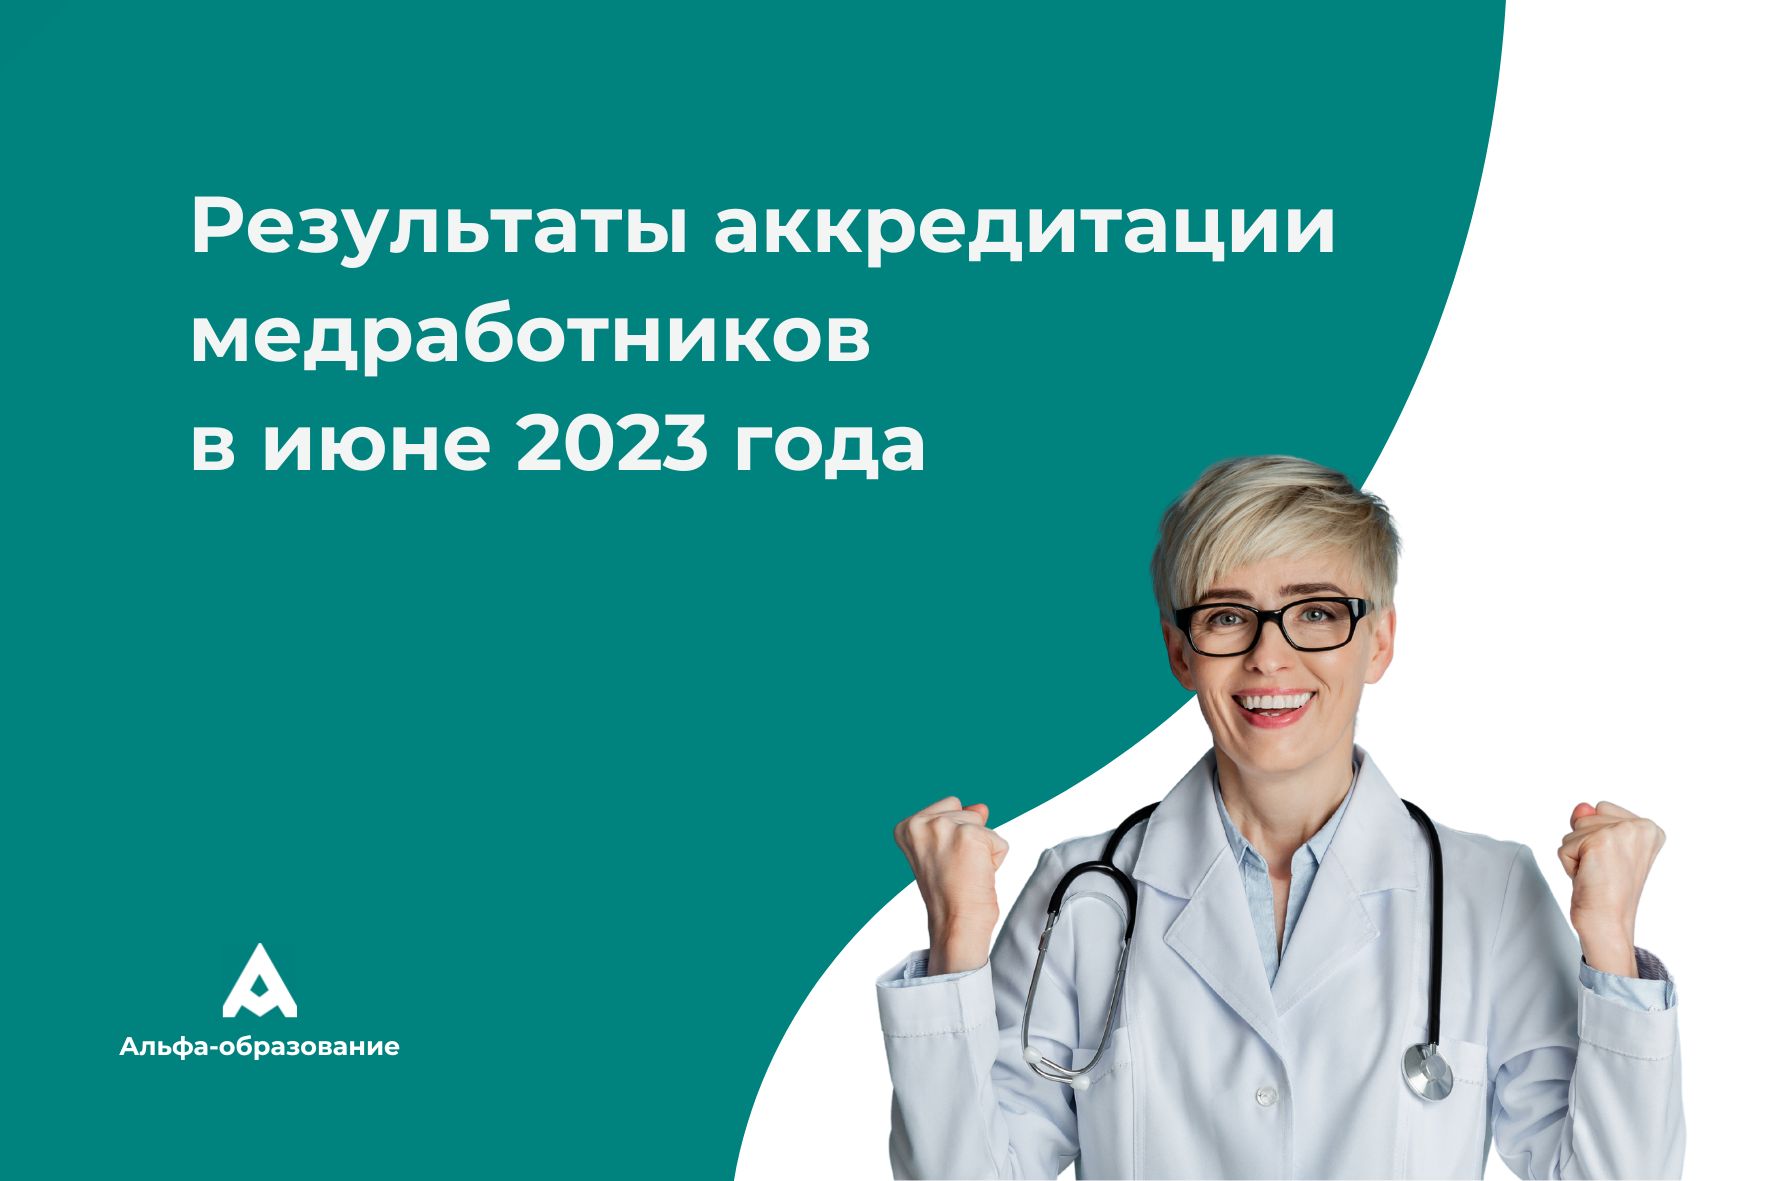 Аккредитация медработников. Аккредитация медицинских работников в 2023. Результаты аккредитации. Портфолио для аккредитации медицинских работников в 2023 году. Результаты аккредитации февраль 2024